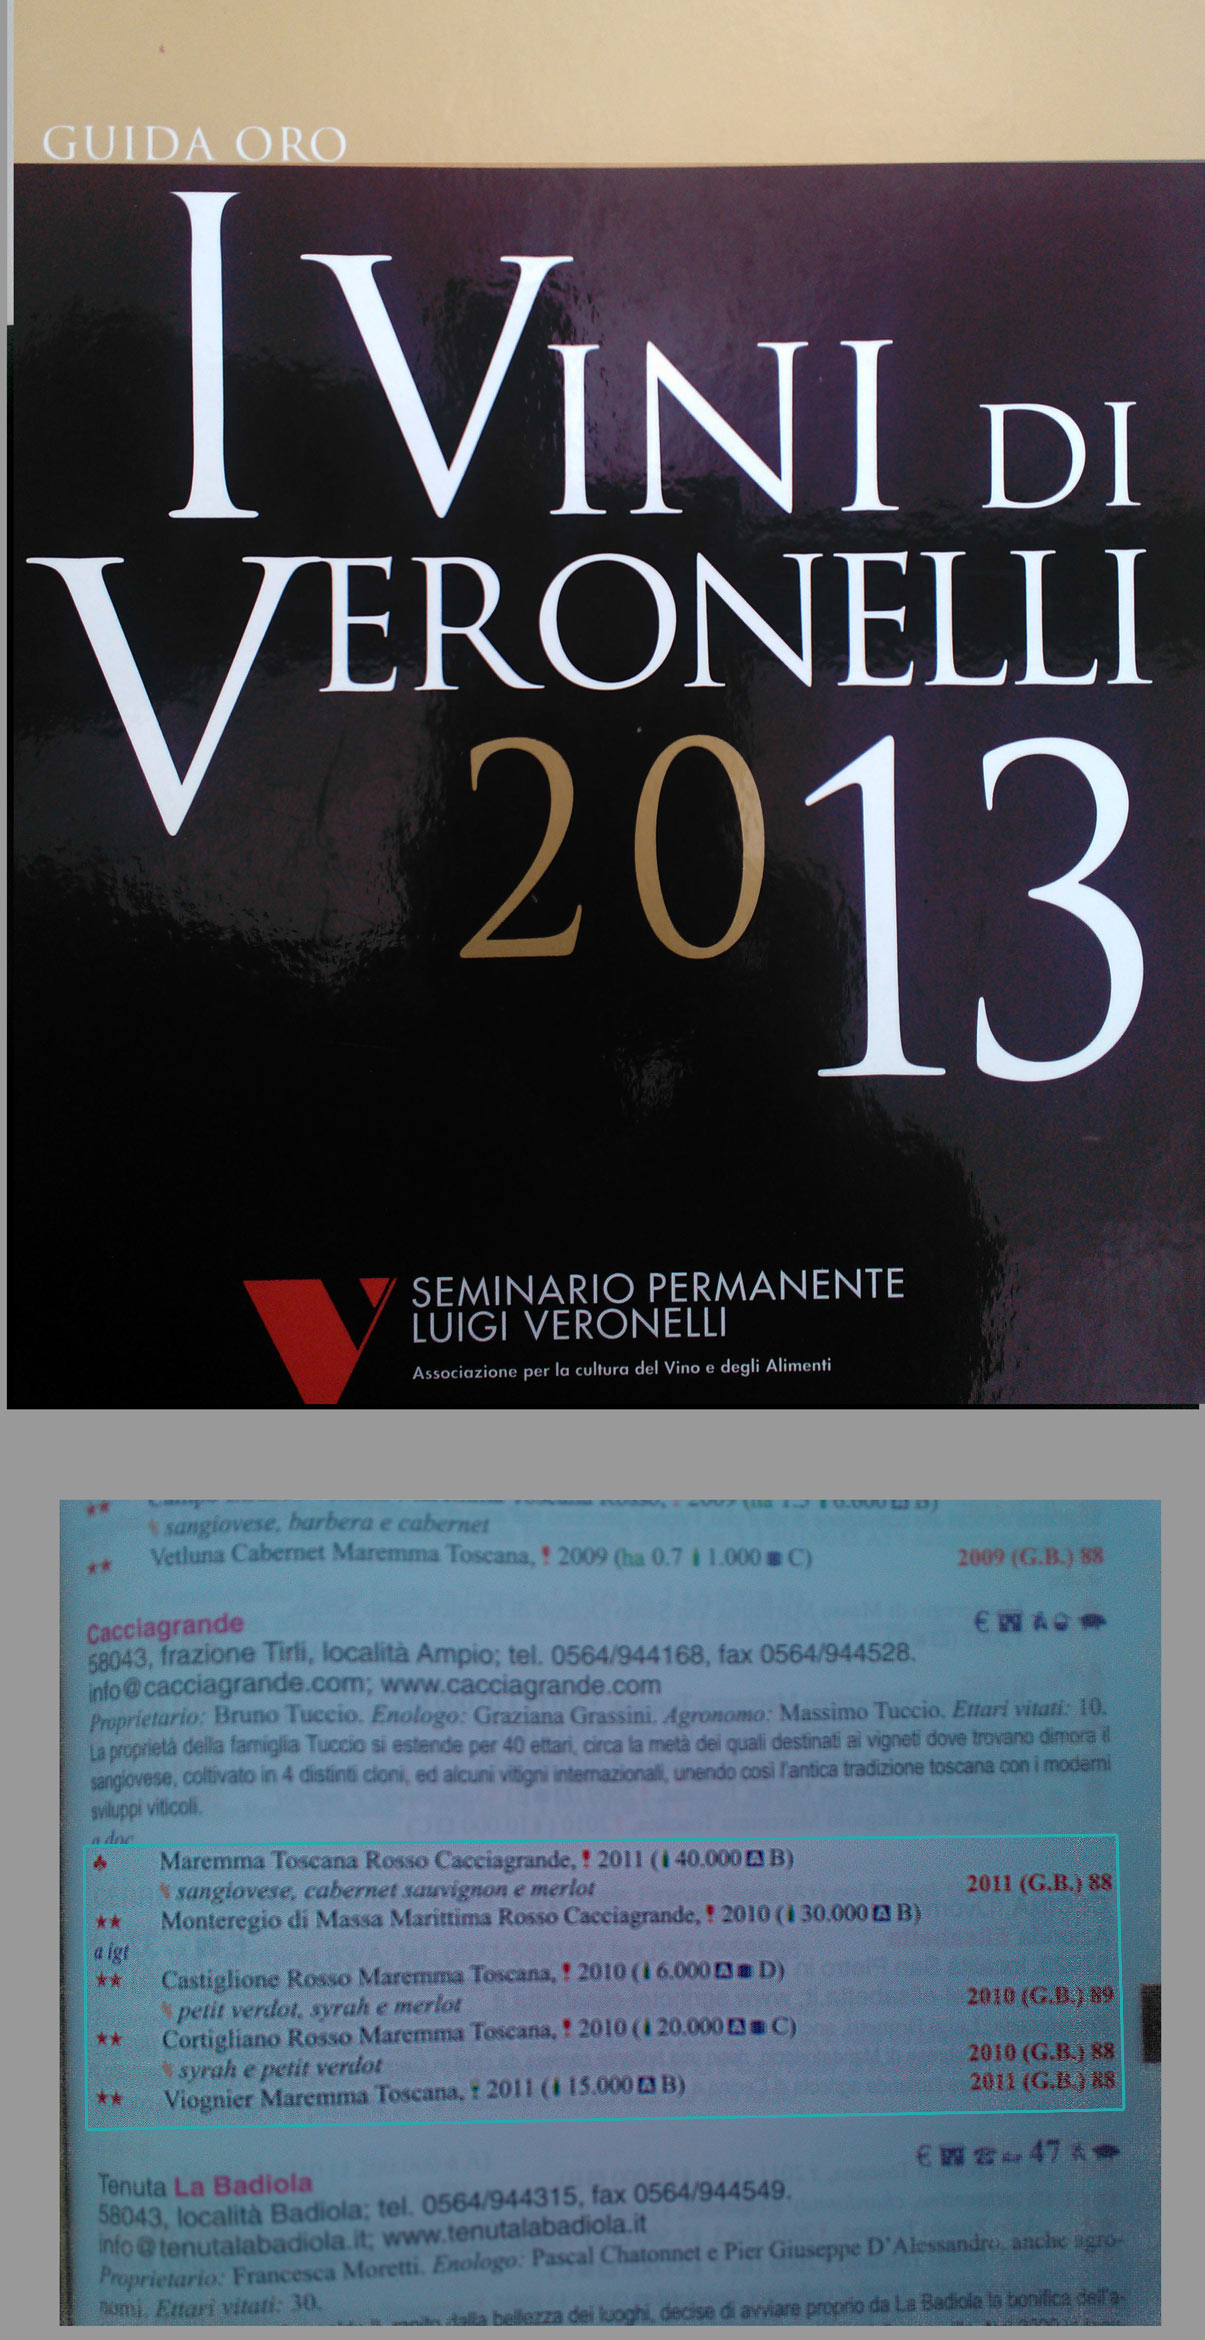 I Vini Veronelli 2013 - I vini premiati dell'Azienda Vinicola Cacciagrande